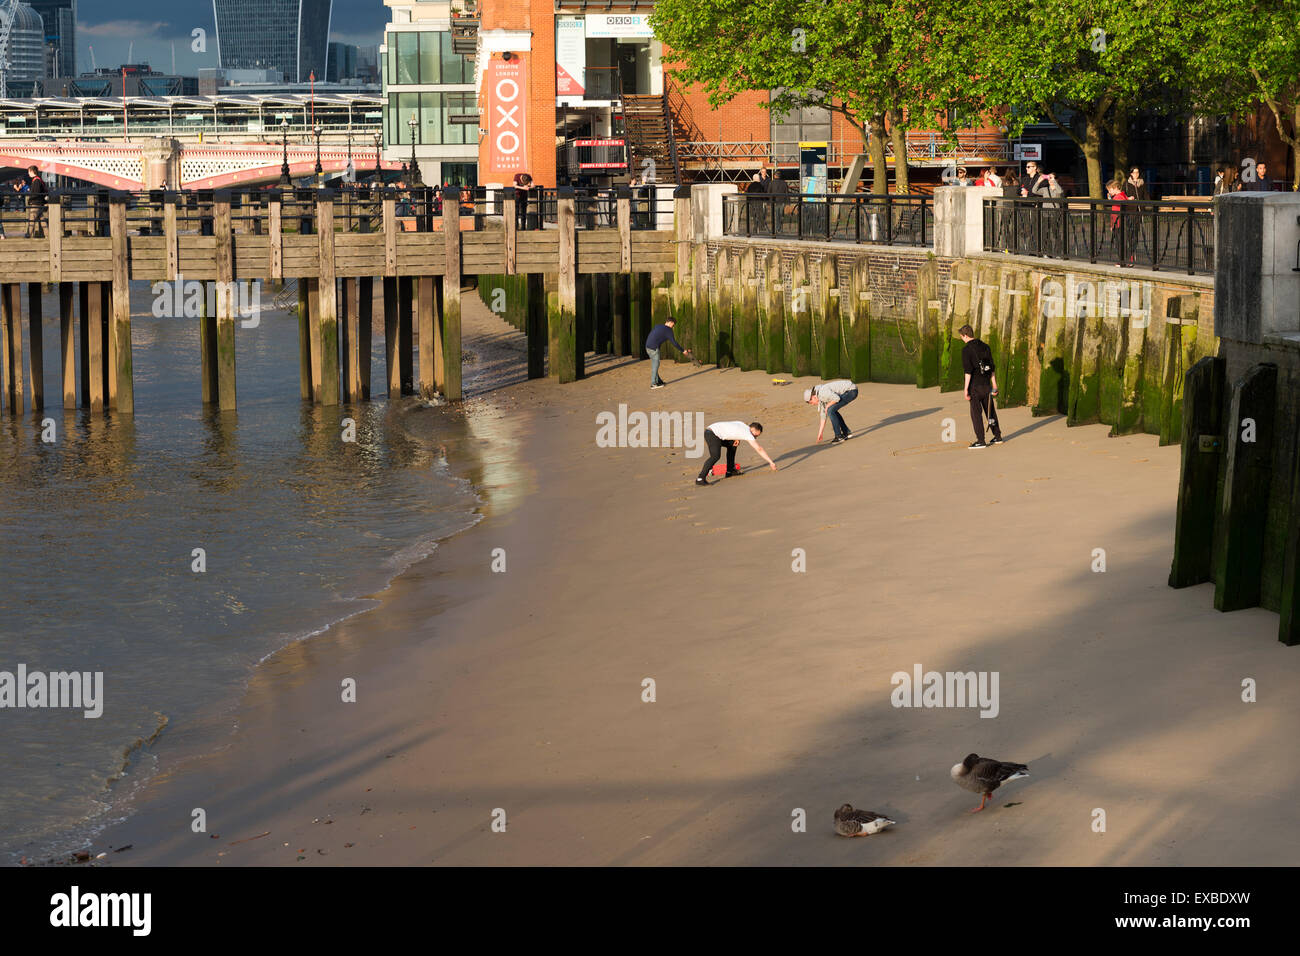 Personnes jouant sur une plage près de la rivière Thames & Oxo Tower Gabriel's Wharf, Southbank London, England, UK. Banque D'Images